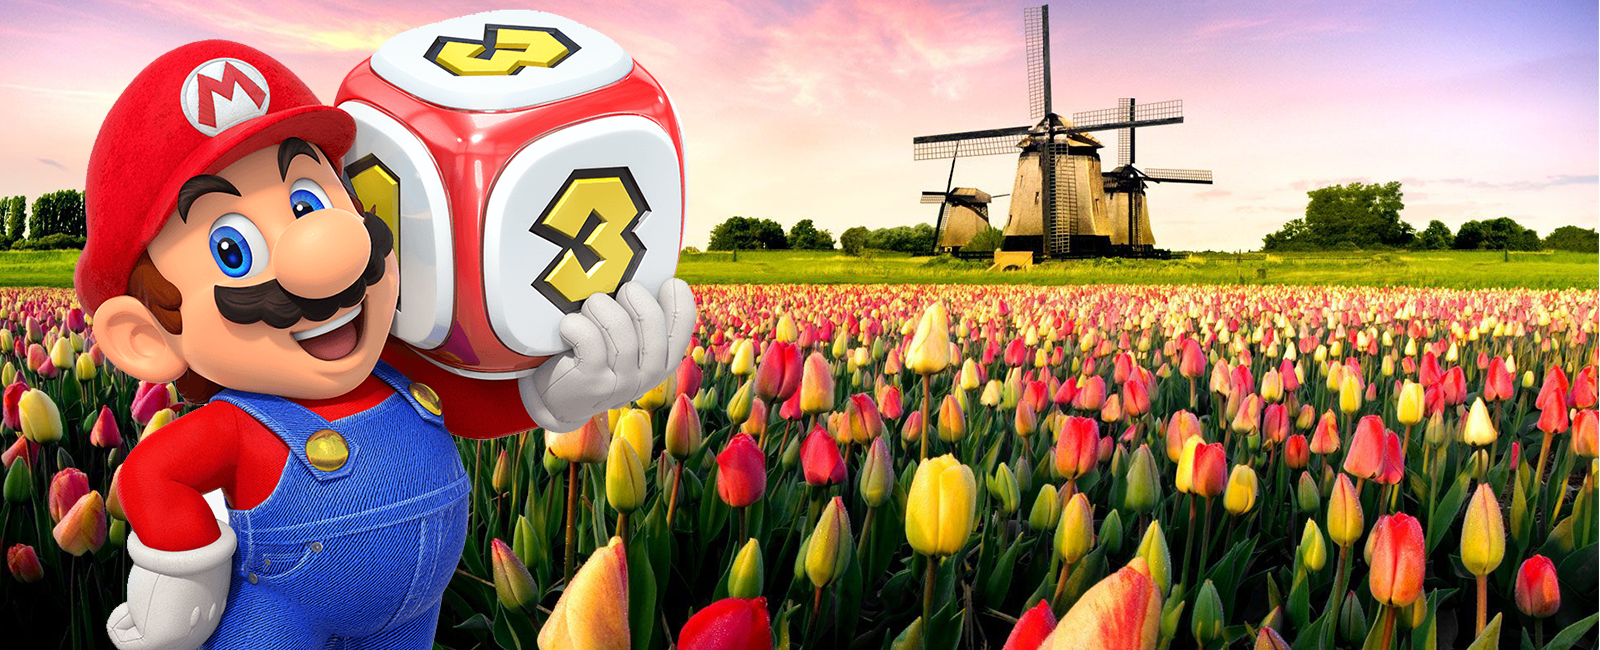 Nintendo-mascotte Super Mario bij een tulpenveld in Nederland